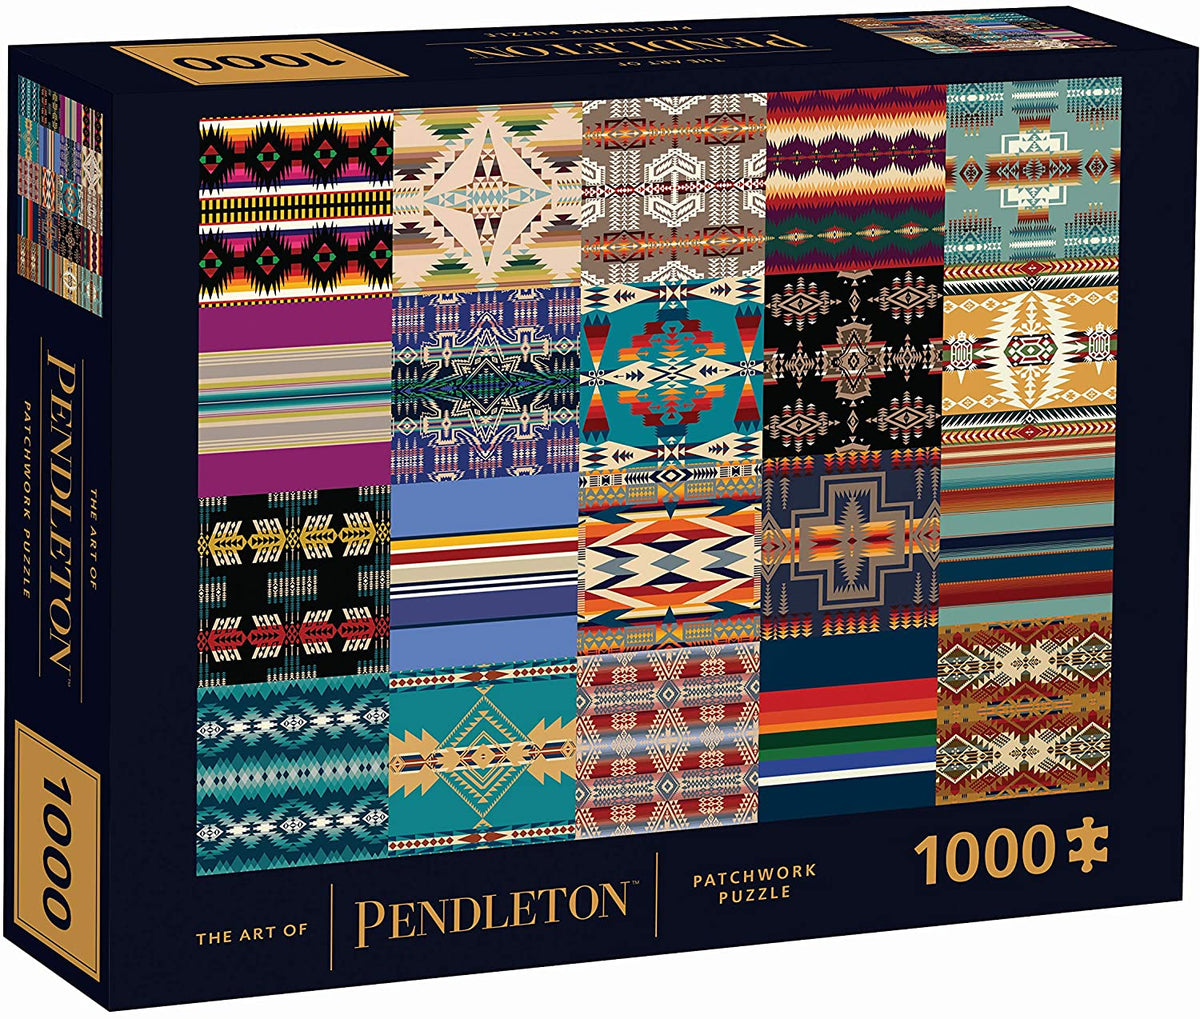 Art of Pendleton Patchwork 1000-piece Puzzle